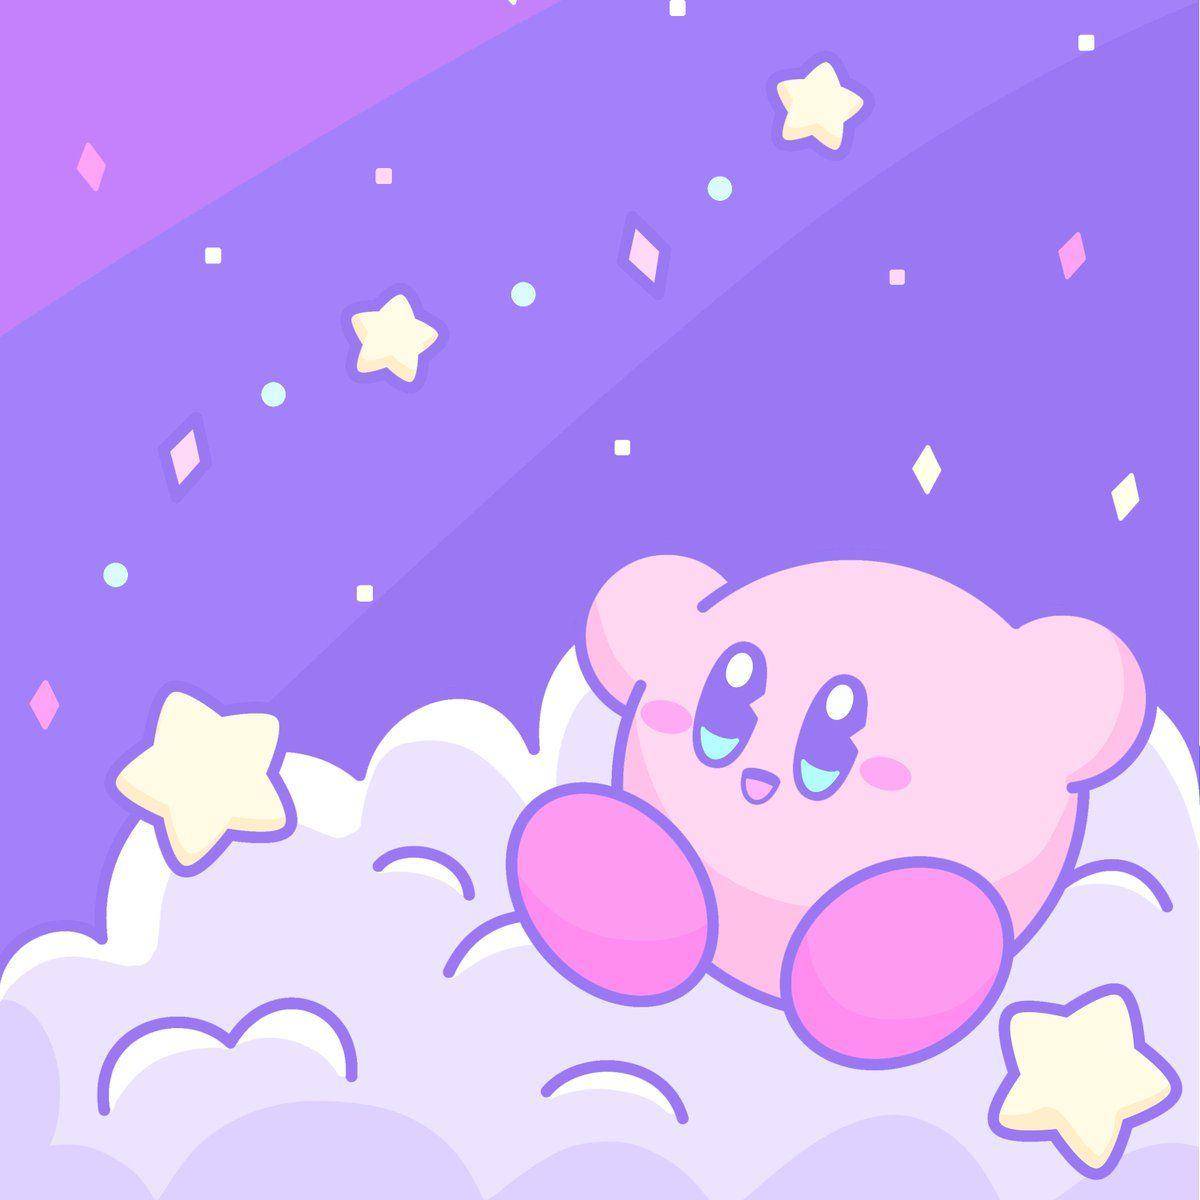 Kirby là một nhân vật huyền thoại của Nintendo với nét đáng yêu và dễ thương. Hình nền Kirby sẽ giúp bạn thêm niềm vui và tình yêu với trò chơi này. Những hình nền đáng yêu của Kirby sẽ làm tươi vui trái tim bạn và giúp bạn cảm thấy thư giãn hơn khi sử dụng điện thoại hay máy tính của mình. Hãy nhanh tay tải ngay các hình nền Kirby đáng yêu để cảm nhận sức hút và sự dễ thương của nhân vật này.